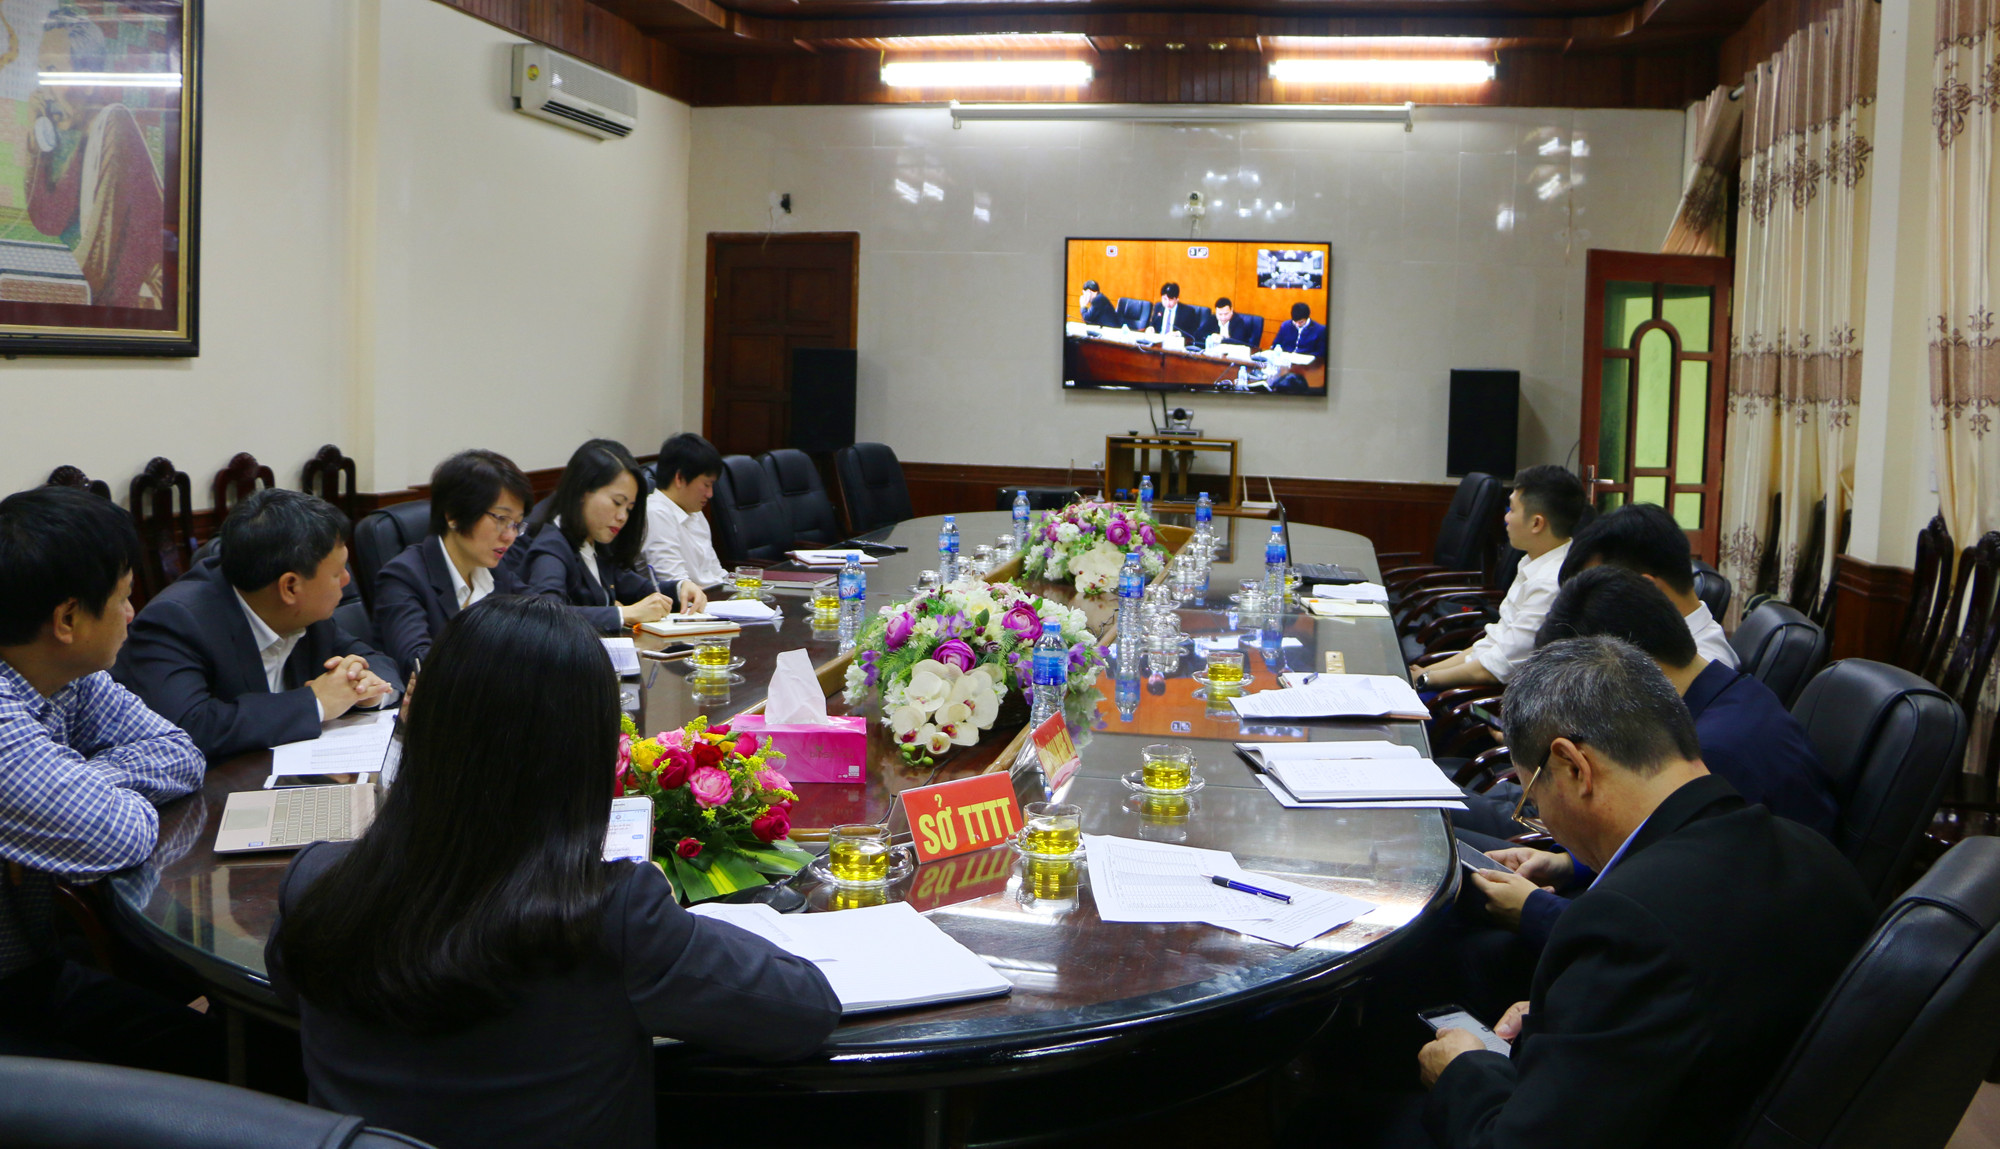 Các đại biểu theo dõi Hội nghị trực tuyến tại đầu cầu Hà Nội, trong đó Văn phòng Chính phủ và Bưu điện Việt Nam nhấn mạnh, cùng với kịp thời về tiến độ phải đảm bảo chất lượng thu thập dự liệu. Ảnh: Nguyễn Hải